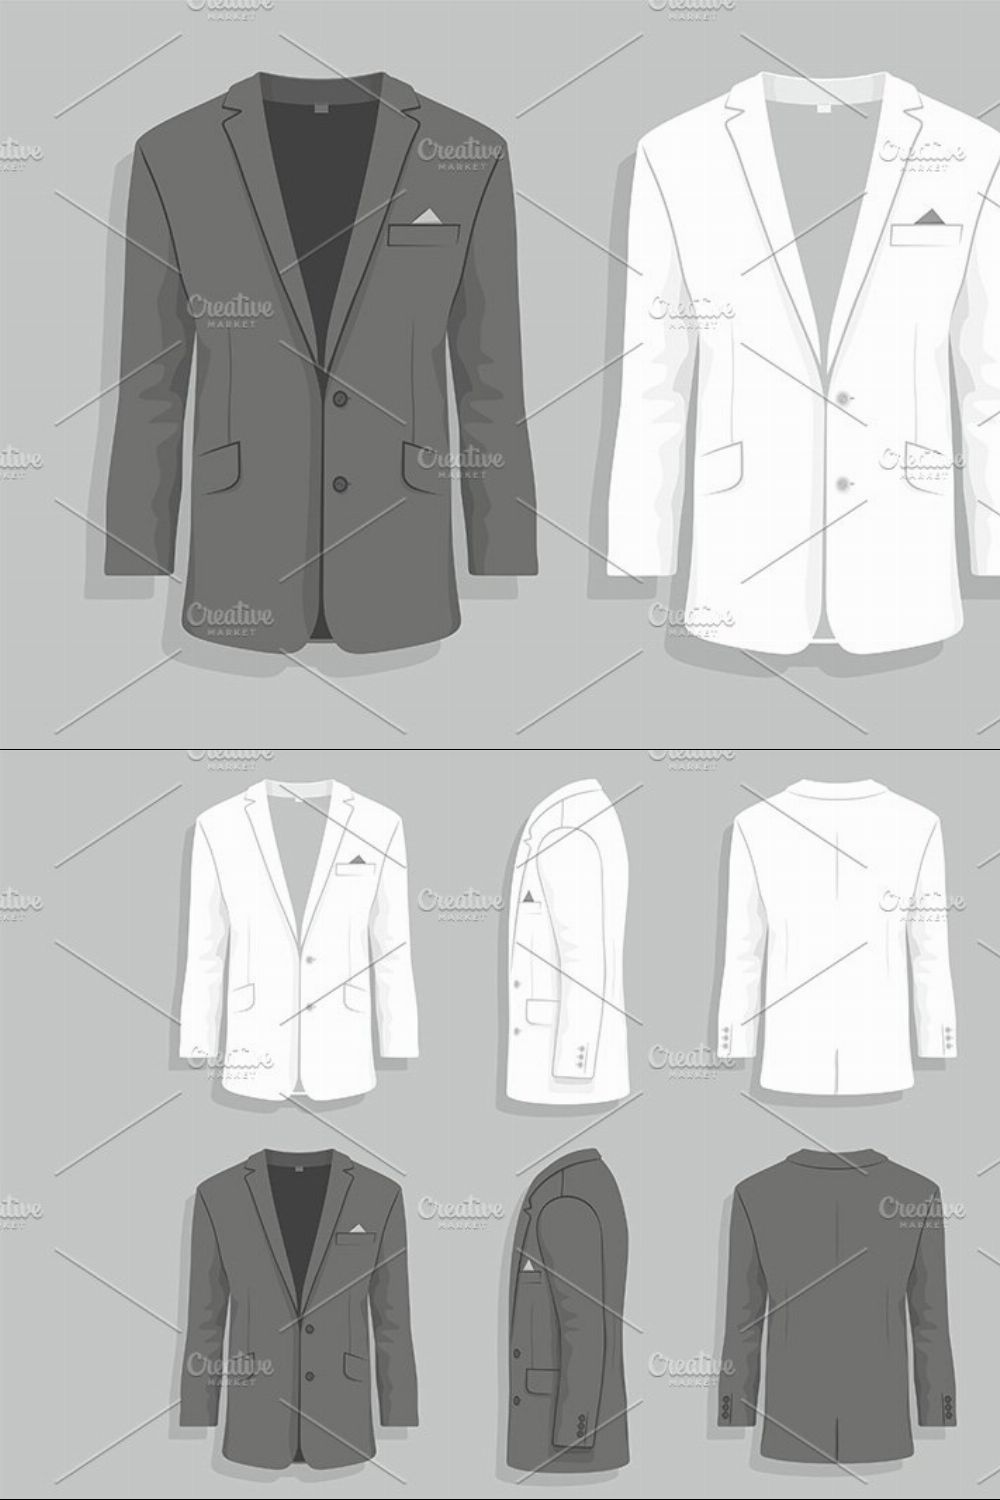 Men's suit pinterest preview image.